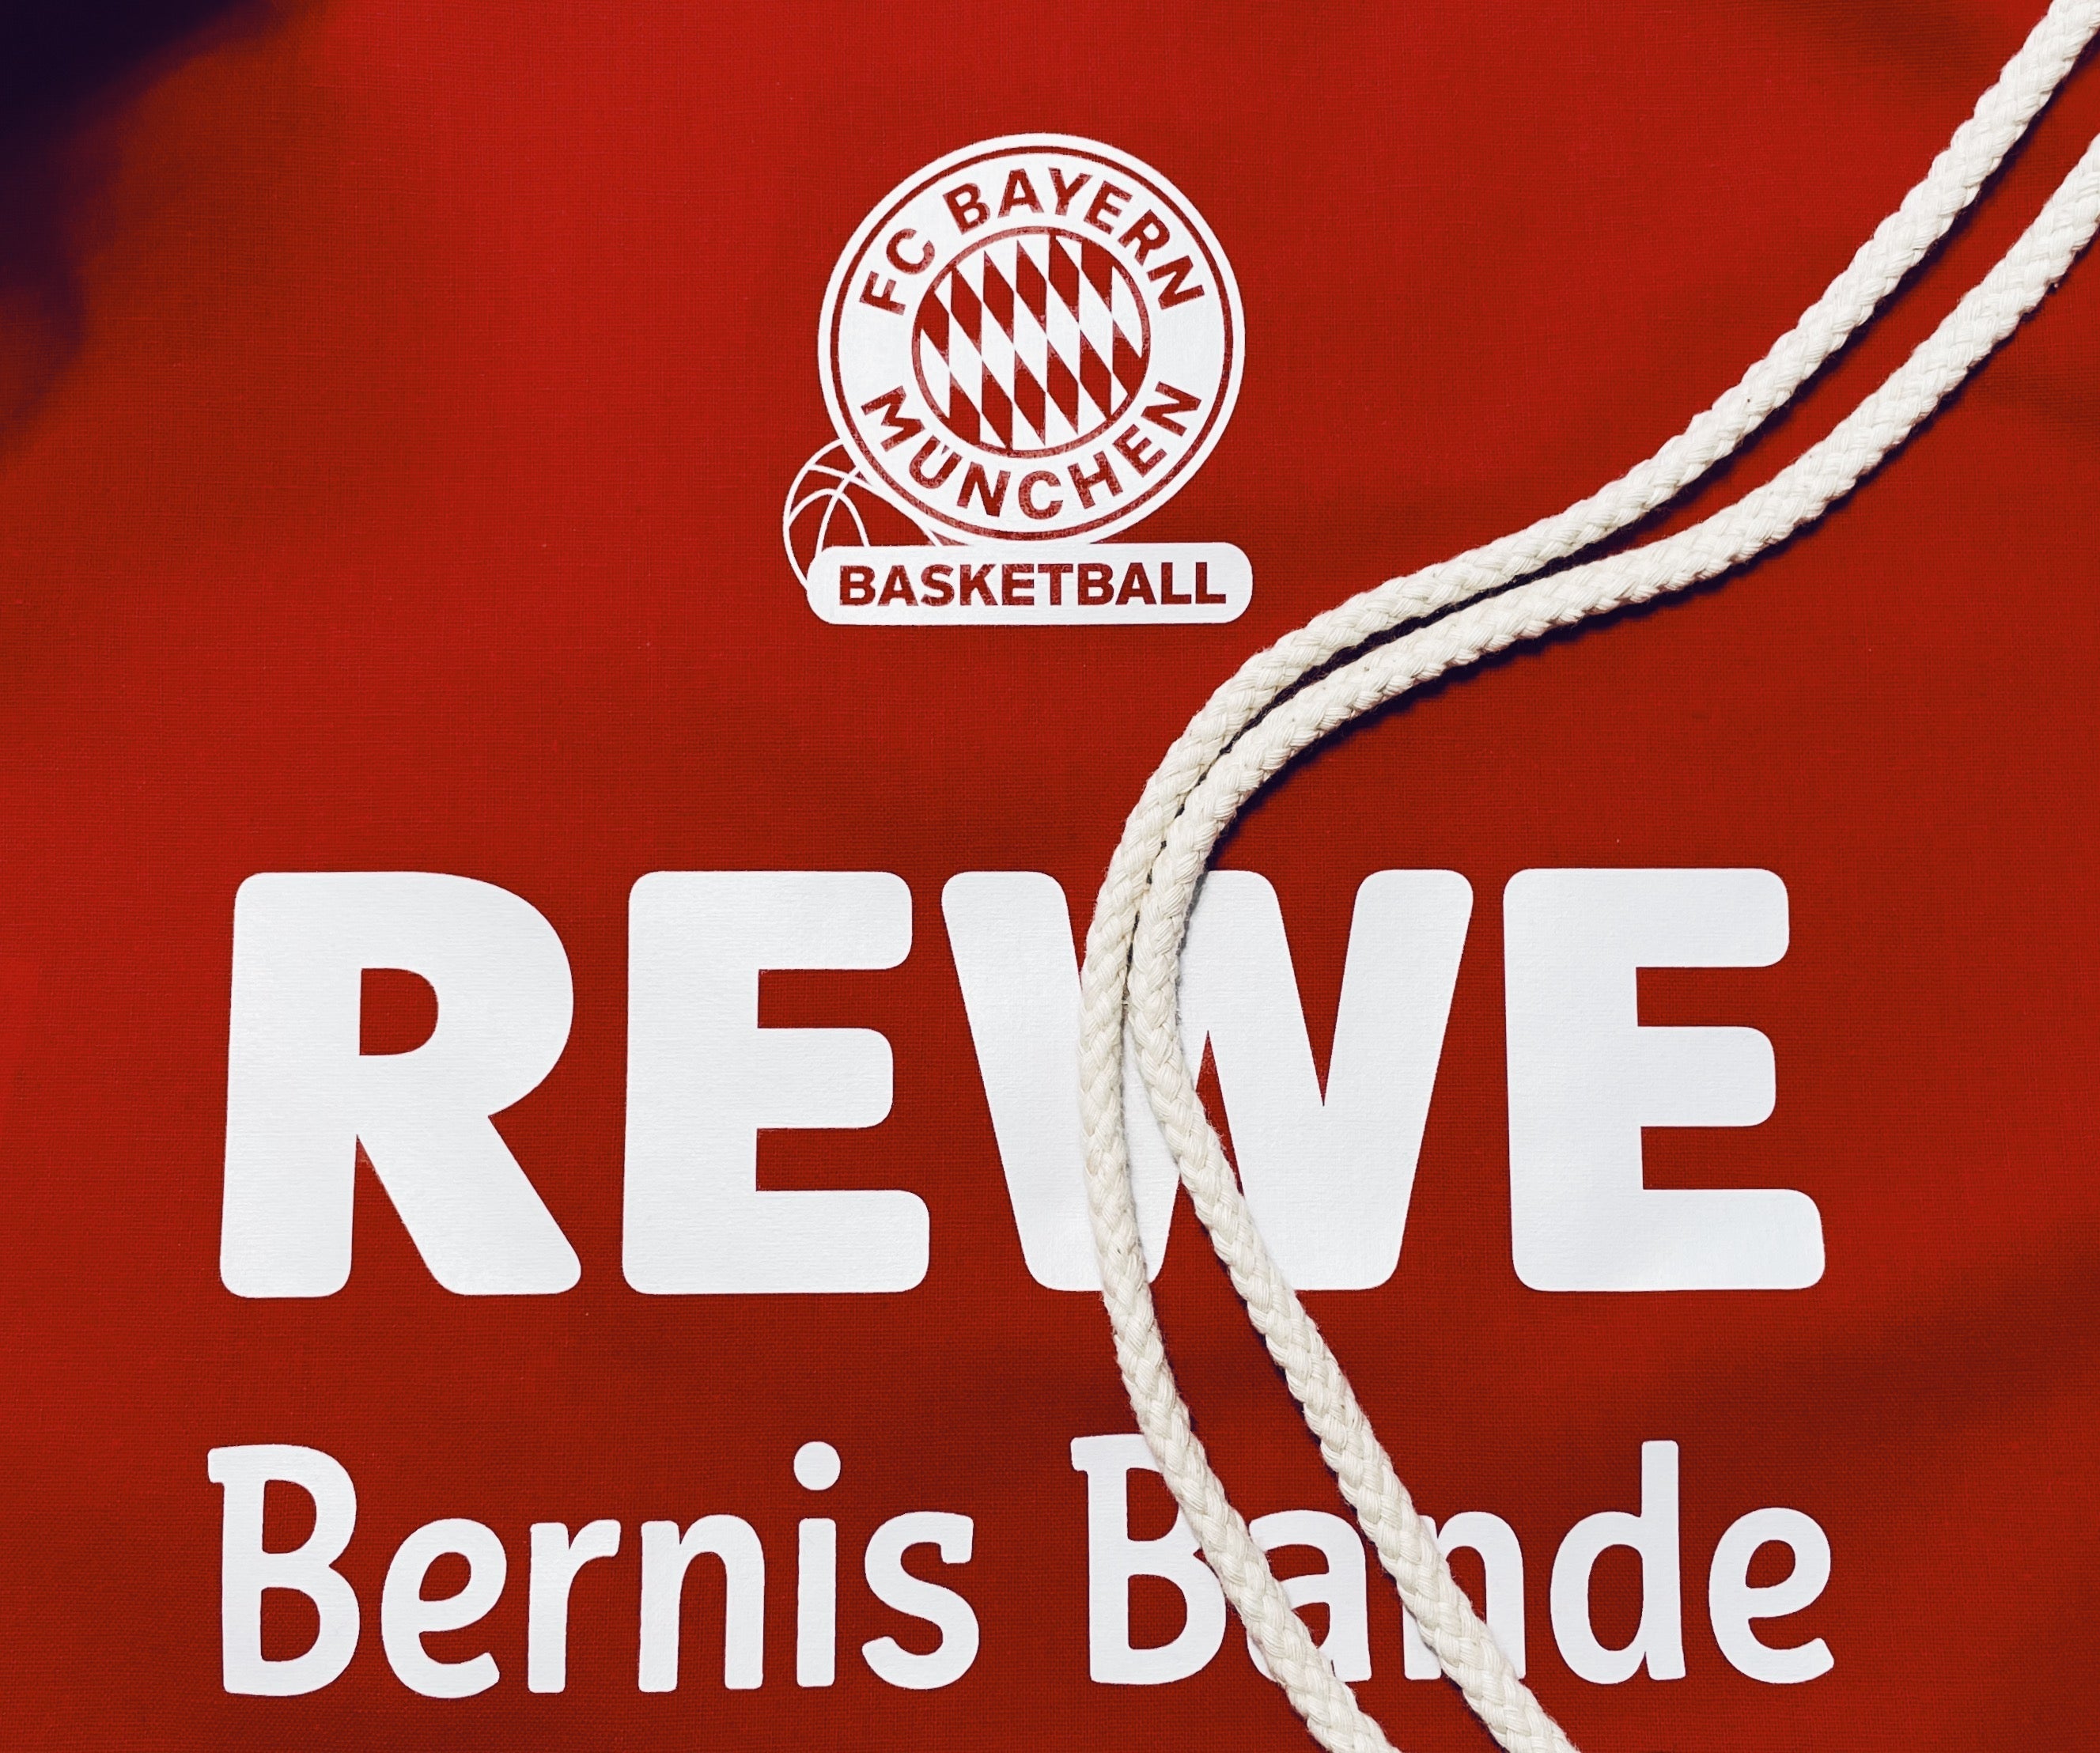 REWE vs. FC Bayern Basketball - SHIRTPLUS